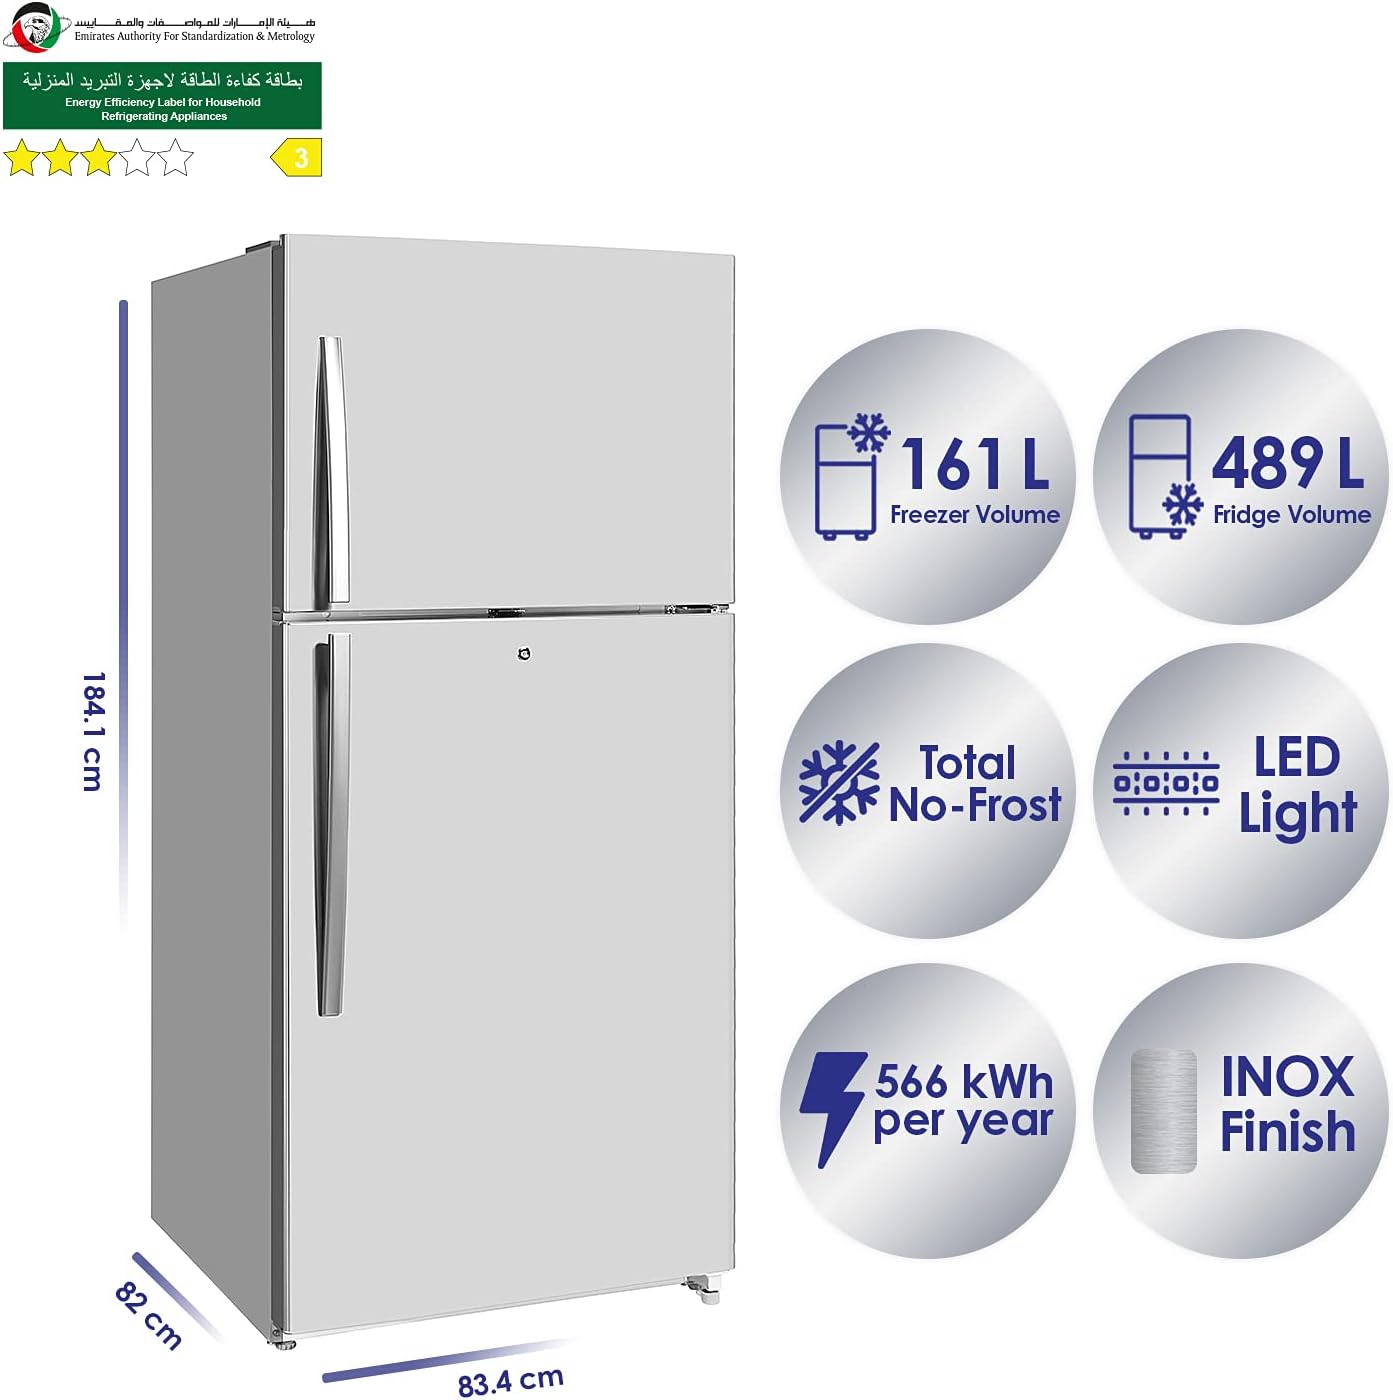 Super General 845L Double Door Refrigerator